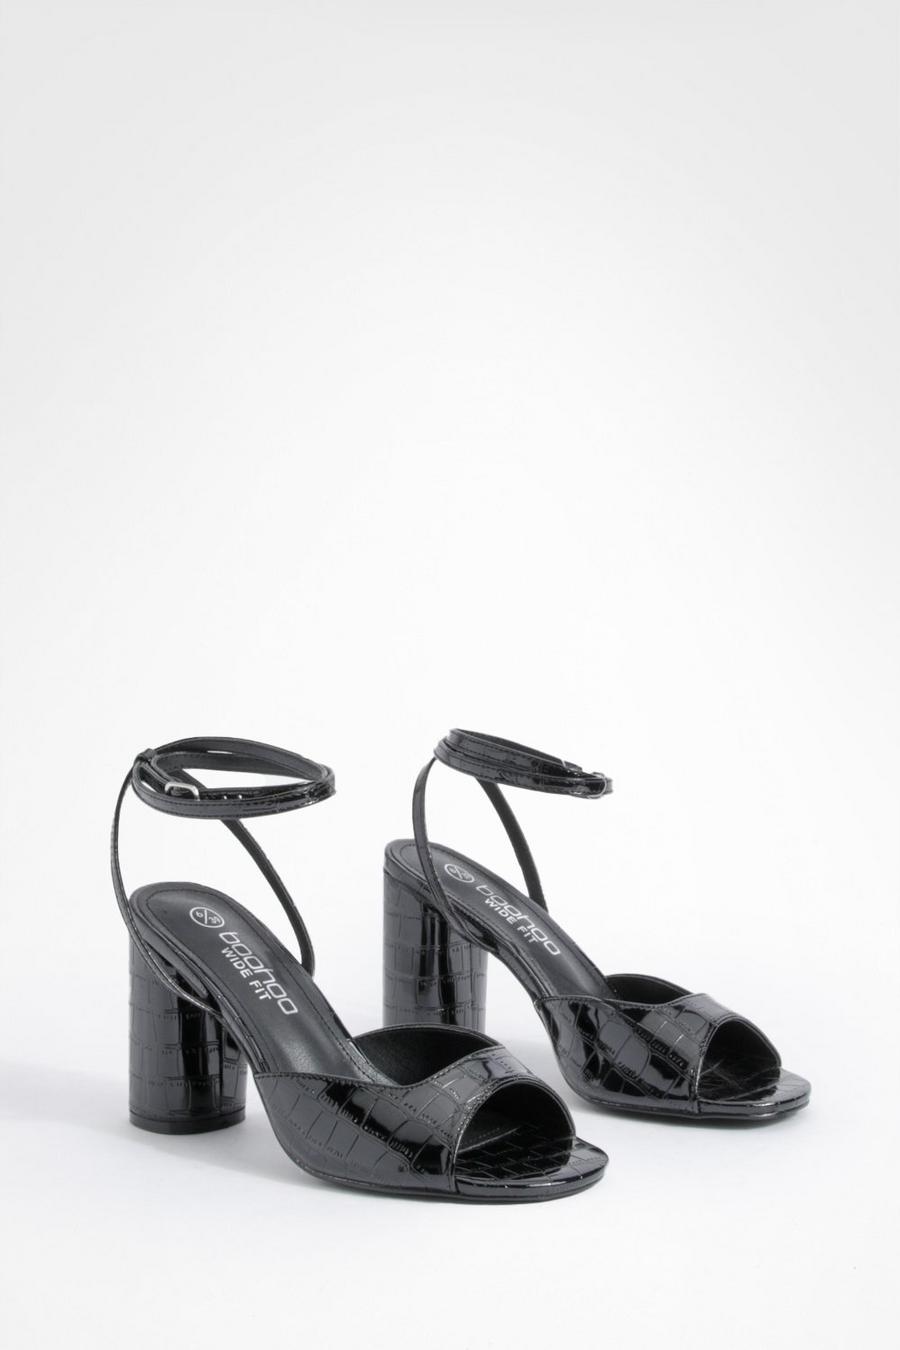 Scarpe a calzata ampia effetto coccodrillo con laccetti e tacco arrotondato, Black